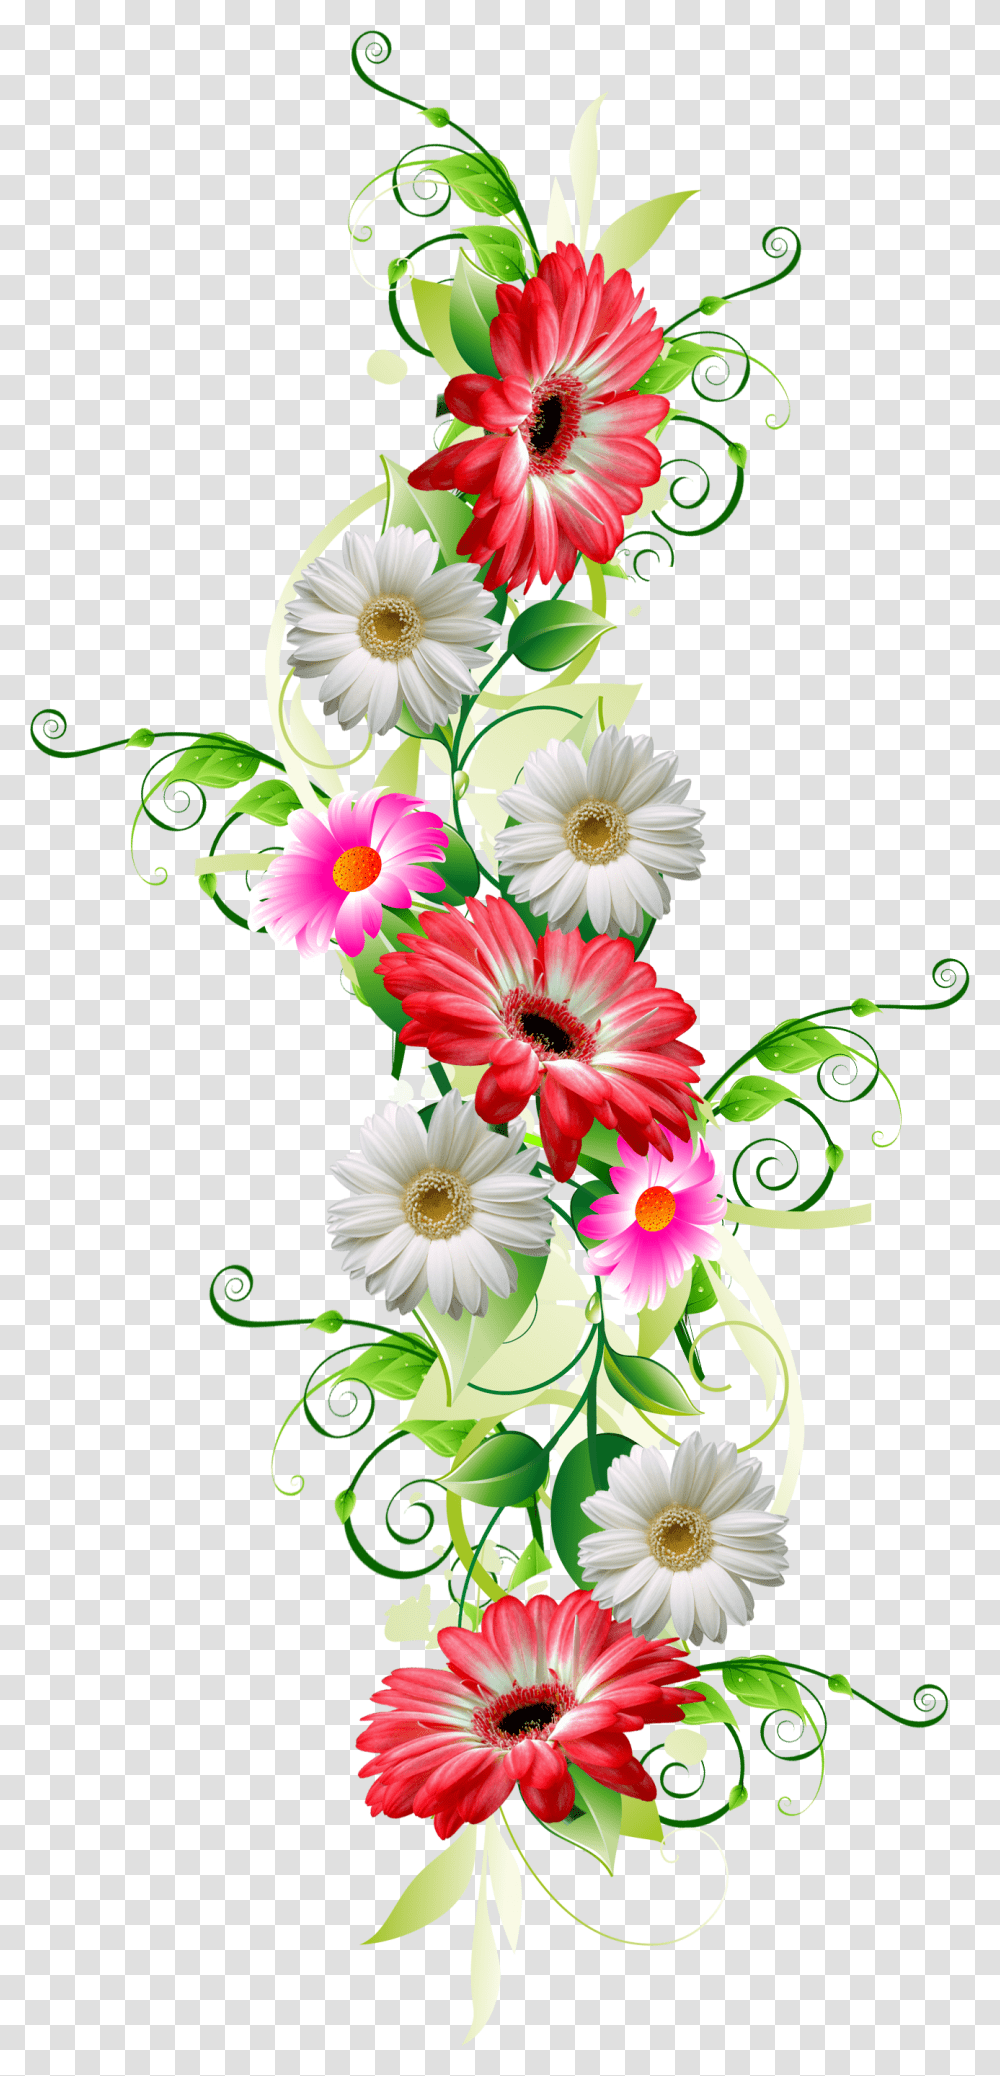 Views Album Puzzles Clip Art Puzzle Riddles Pictures Vertical Flower Design, Plant, Floral Design, Pattern Transparent Png